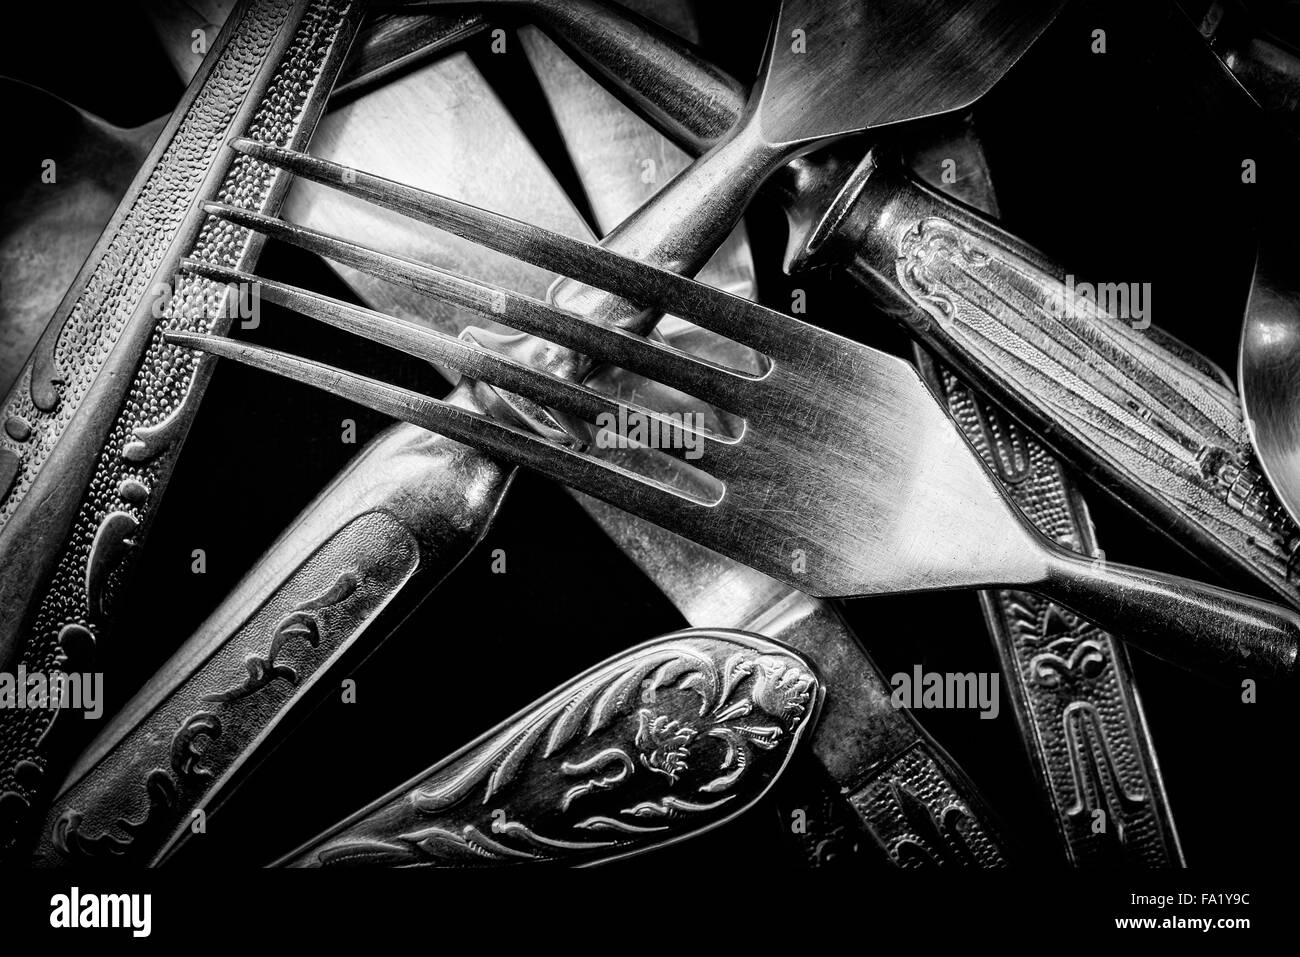 Fotografía en blanco y negro abstractos de plata mixta tenedores, cucharas y cuchillos Foto de stock